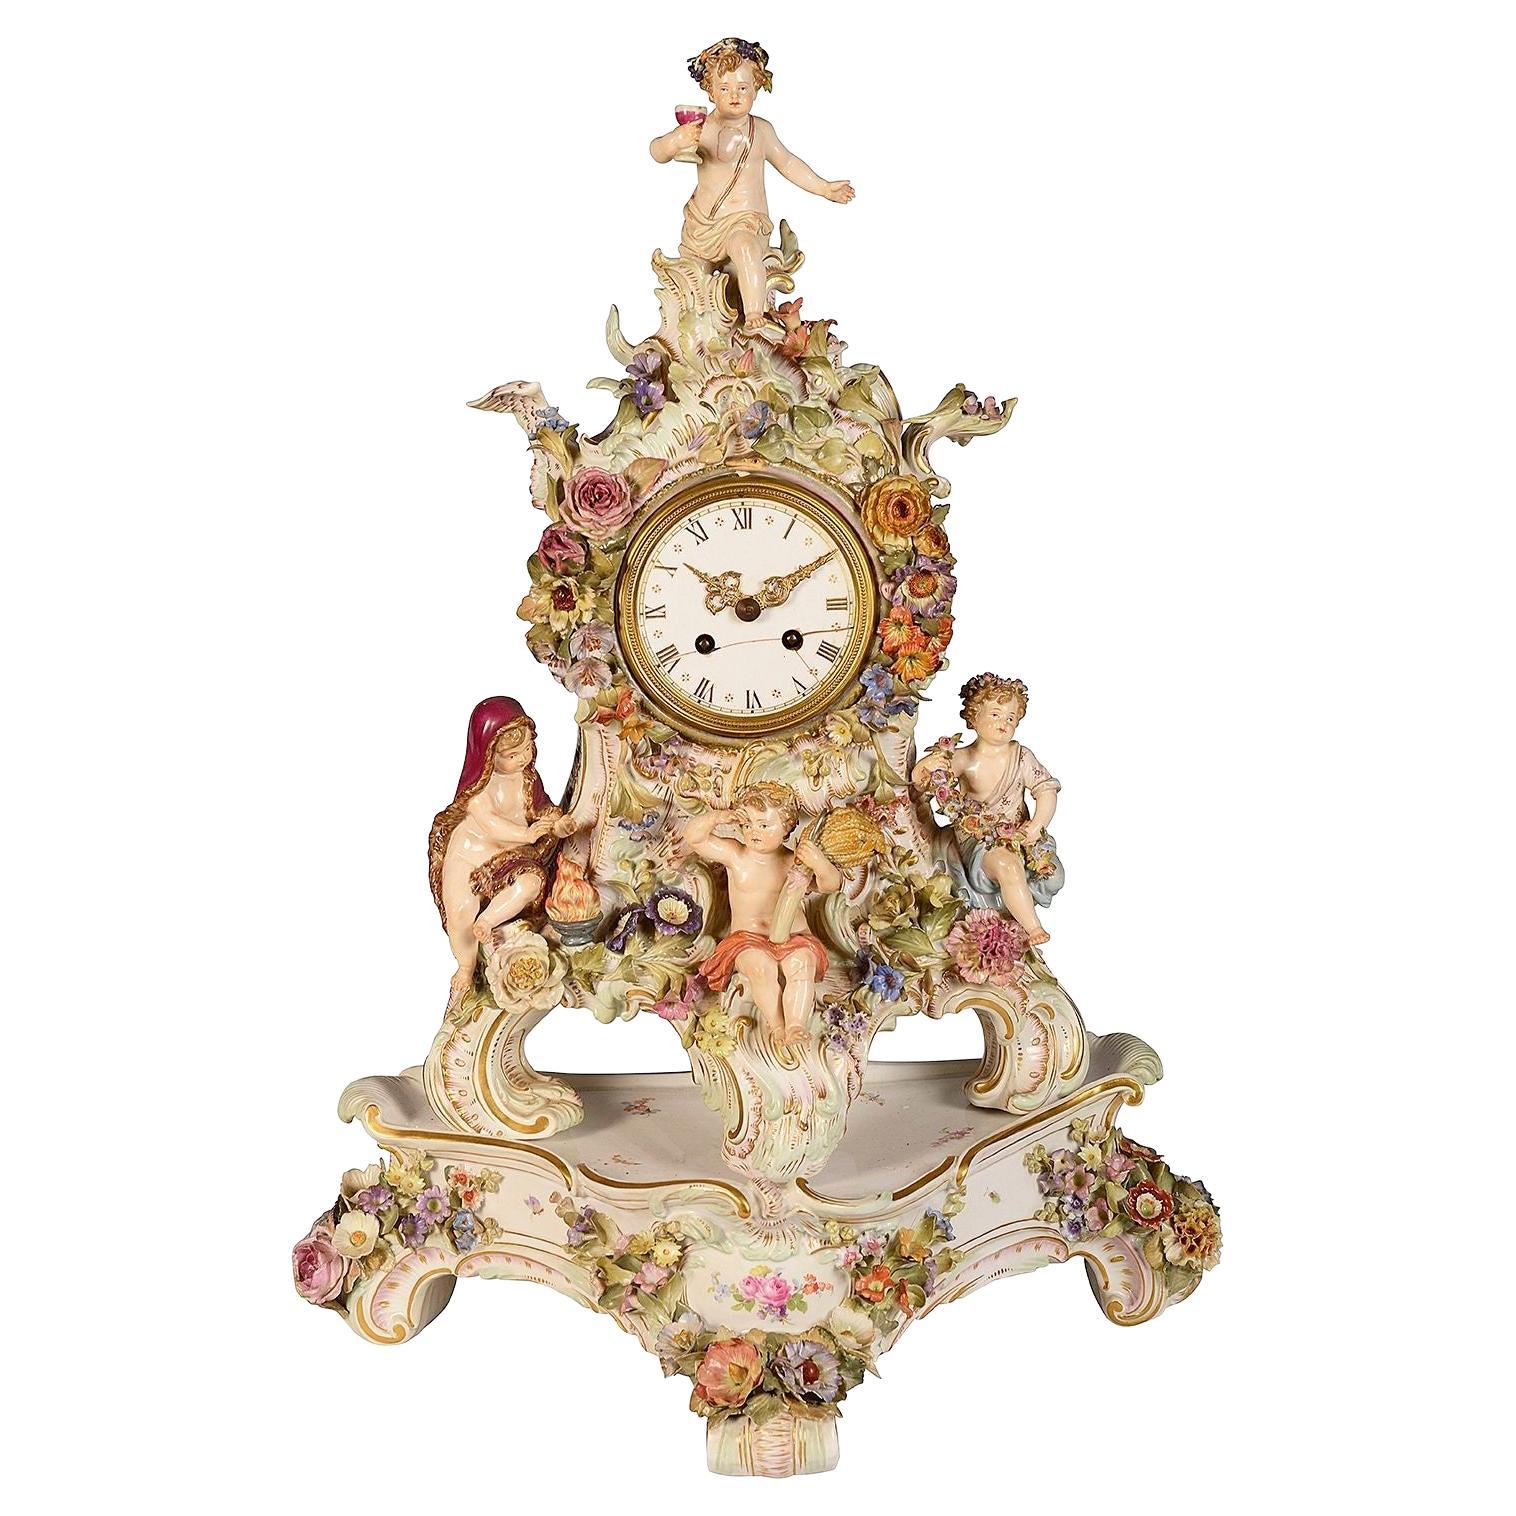 Meissener Uhr aus dem 19. Jahrhundert, die die vier Jahreszeiten darstellt.